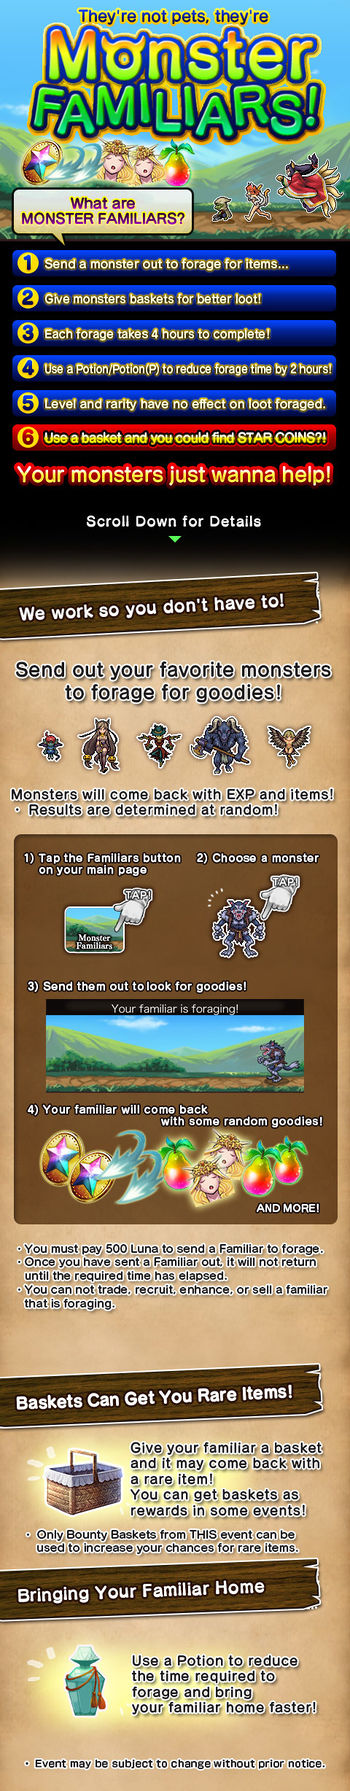 Monster Familiars 8 release.jpg